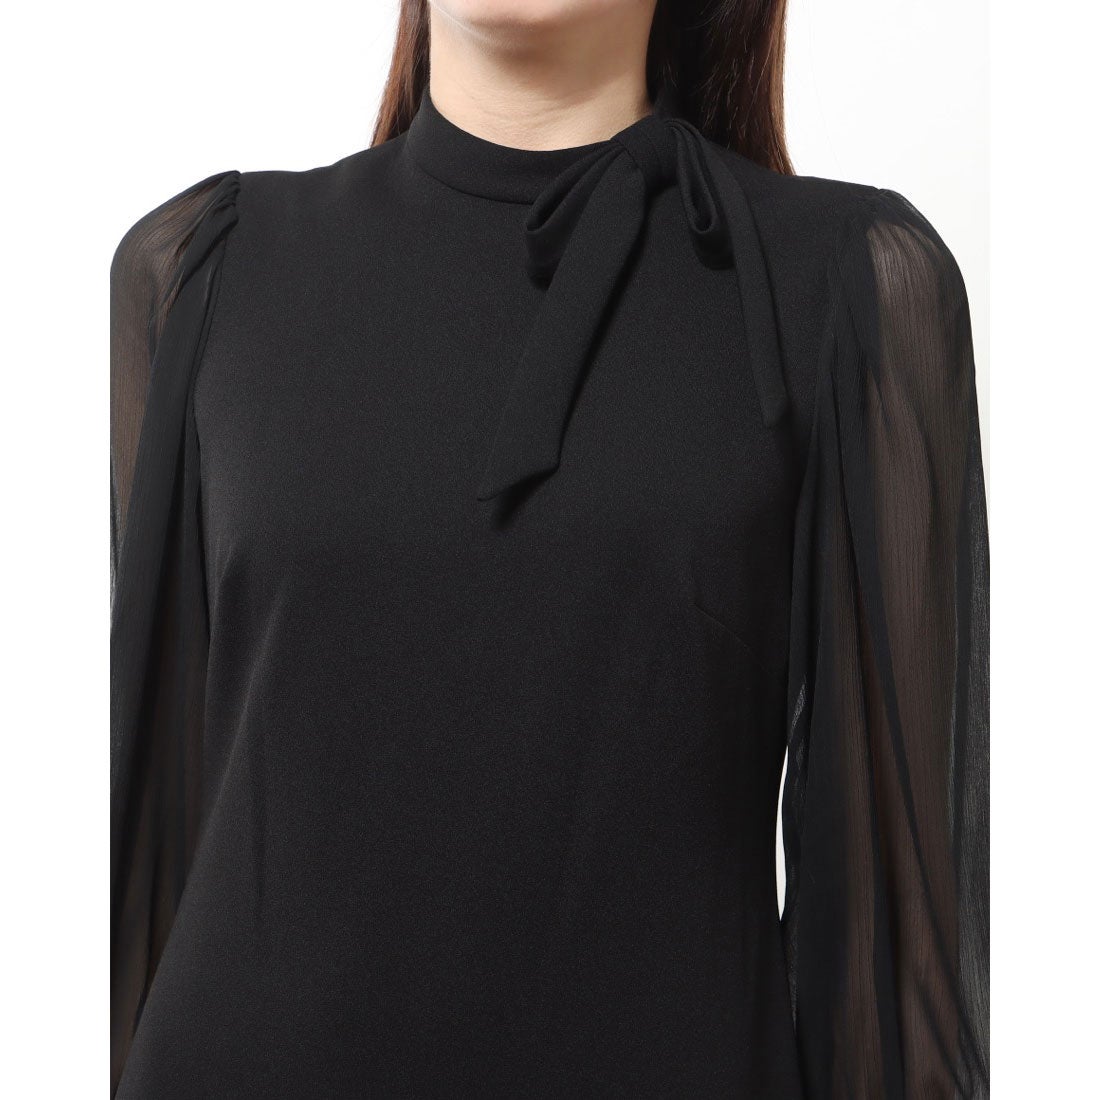 カルバン クライン Calvin Klein シフォン袖にボウタイネックの上品リトルブラックドレス （ブラック） -海外ファッション通販  LOCONDO Buyer